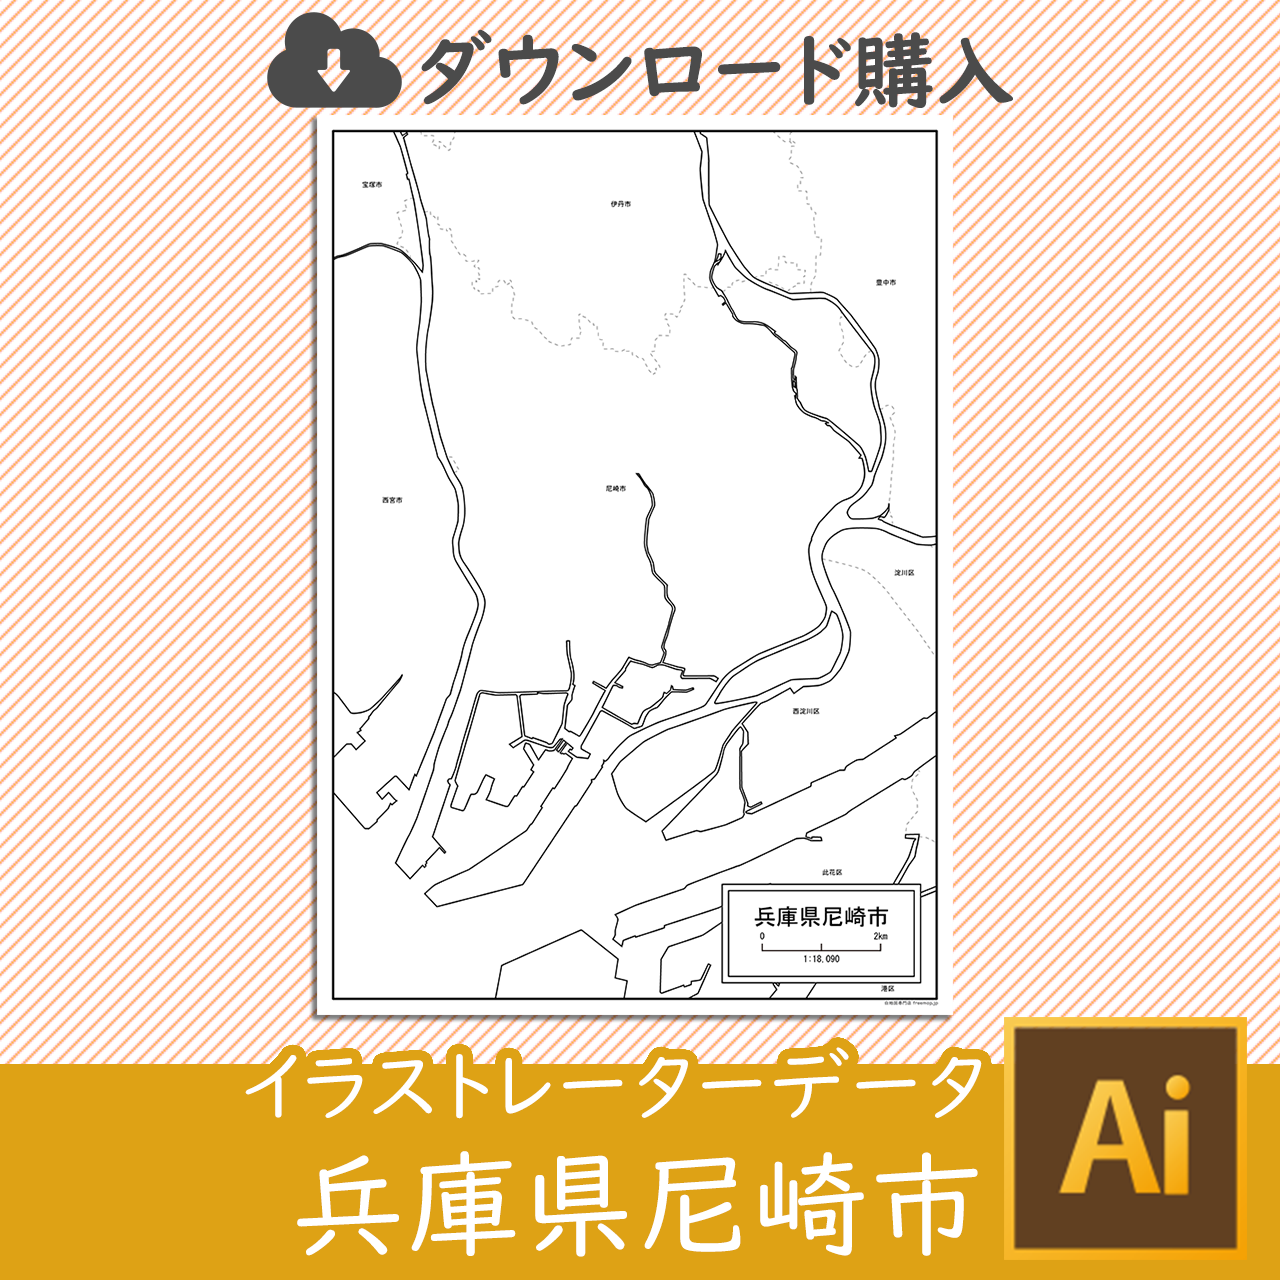 尼崎市のaiデータのサムネイル画像